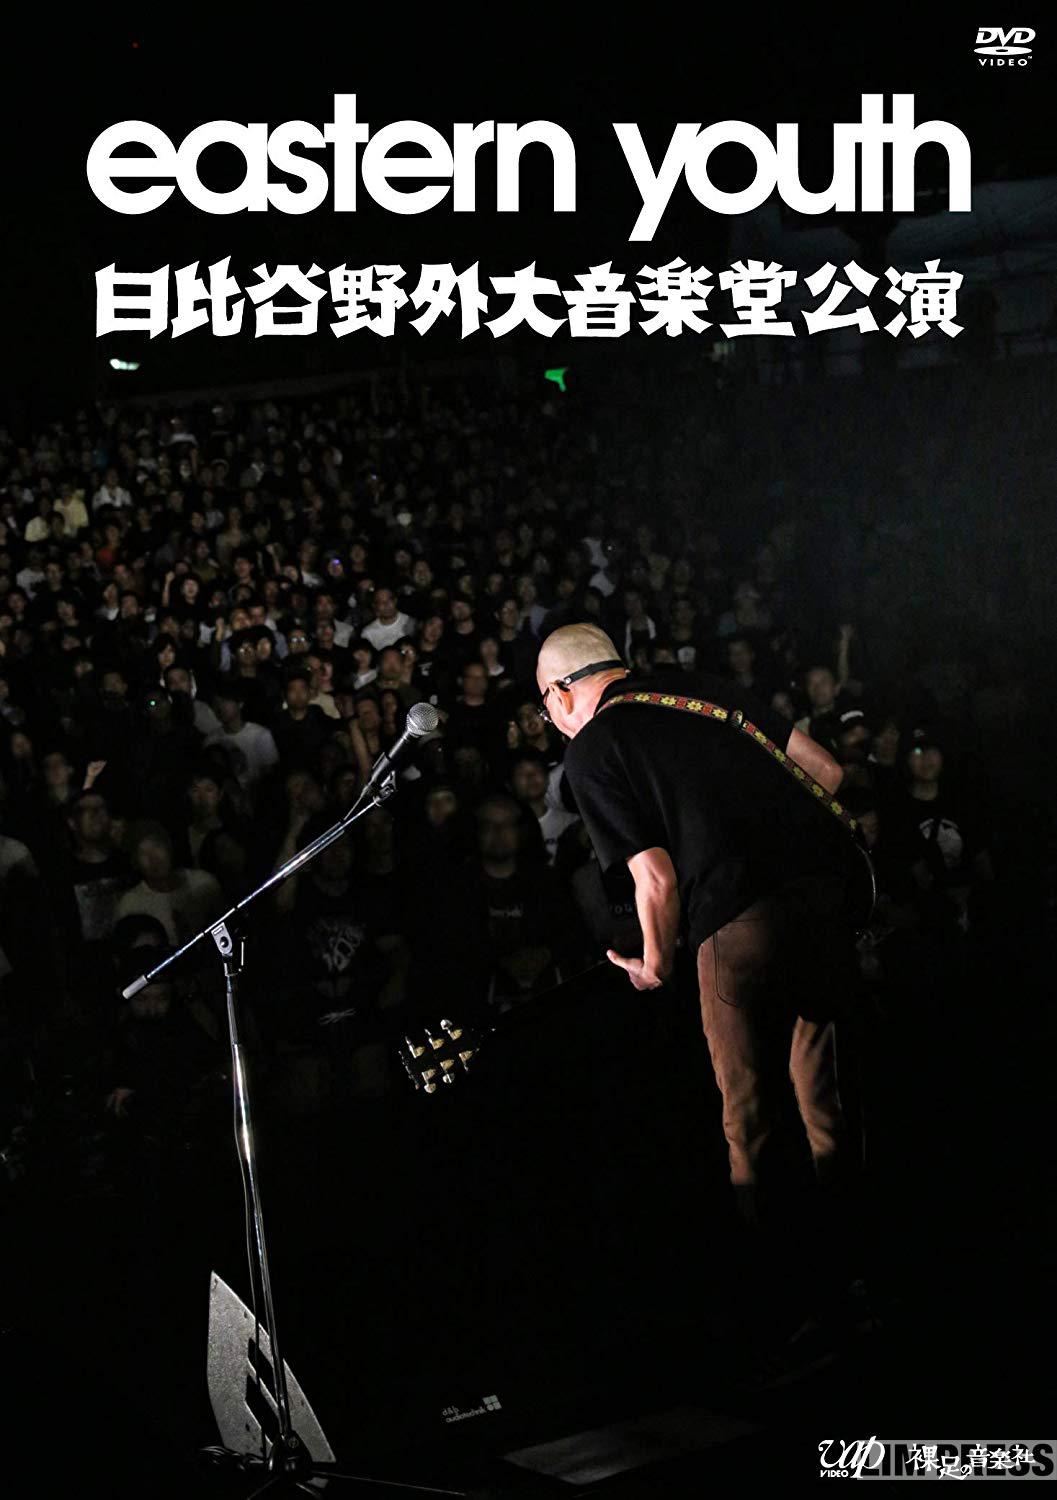 「いつかやりたいなと思っていた」川口潤監督が20年越しで実現した、eastern youth日比谷野音ライブのノーカット映像化を語る